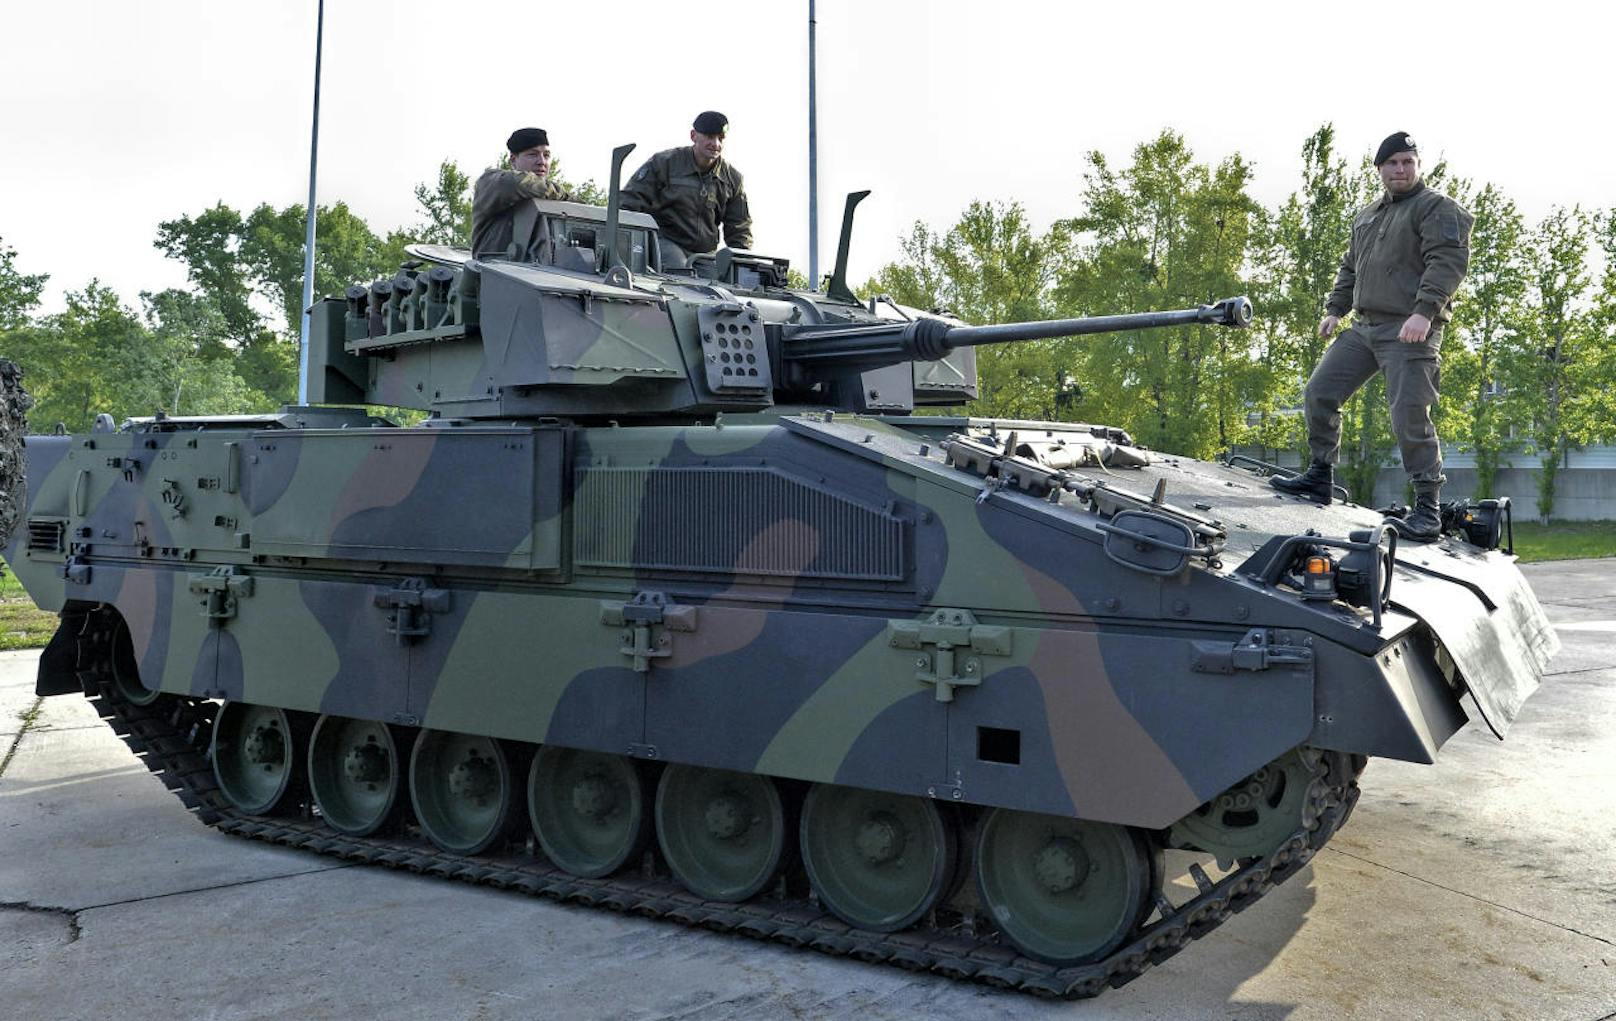 Soldaten auf einem Panzer am Freitag, 21. April 2017auf dem Werksgelände von General Dynamics European Land Systems Steyr in Wien-Simmering.